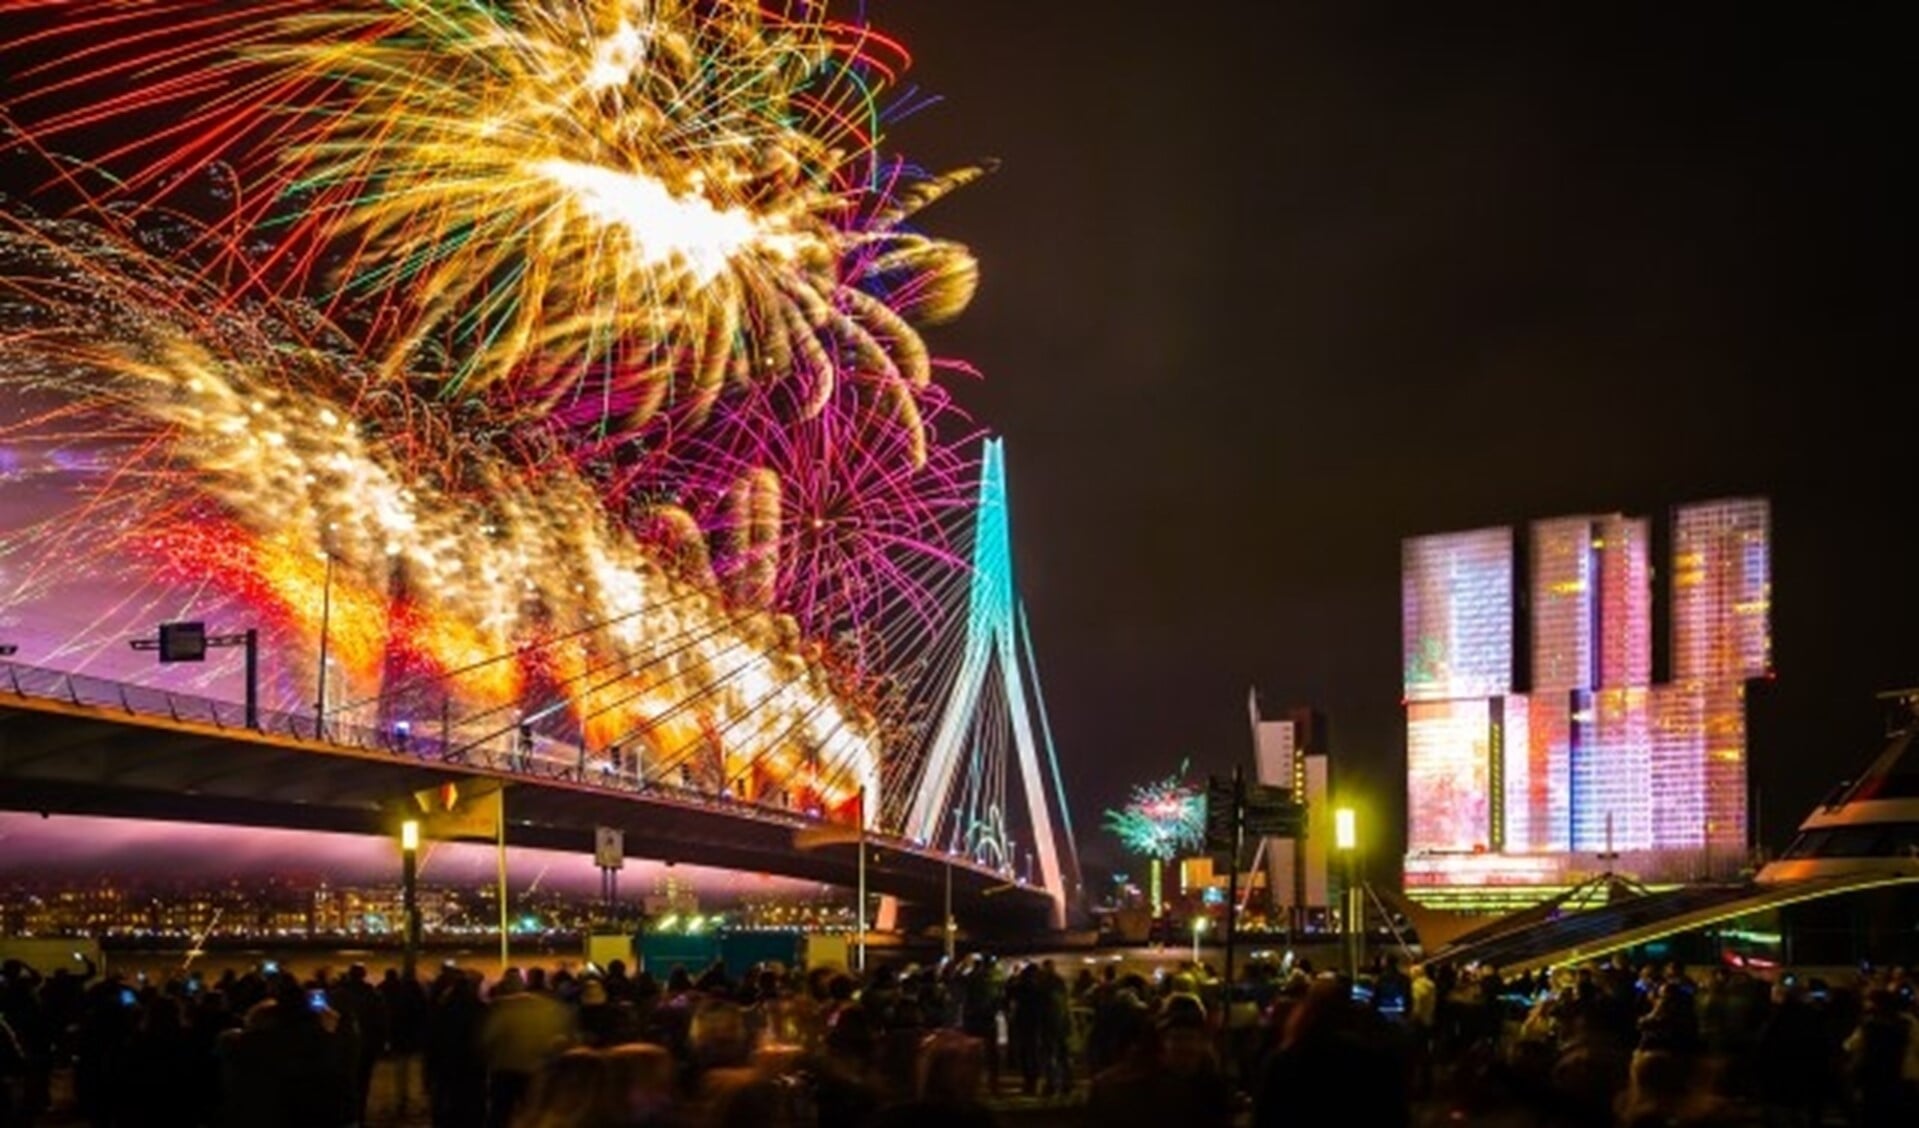 Kom kijken naar de grootste vuurwerkshow van Nederland. (Foto: Peter Bezemer)